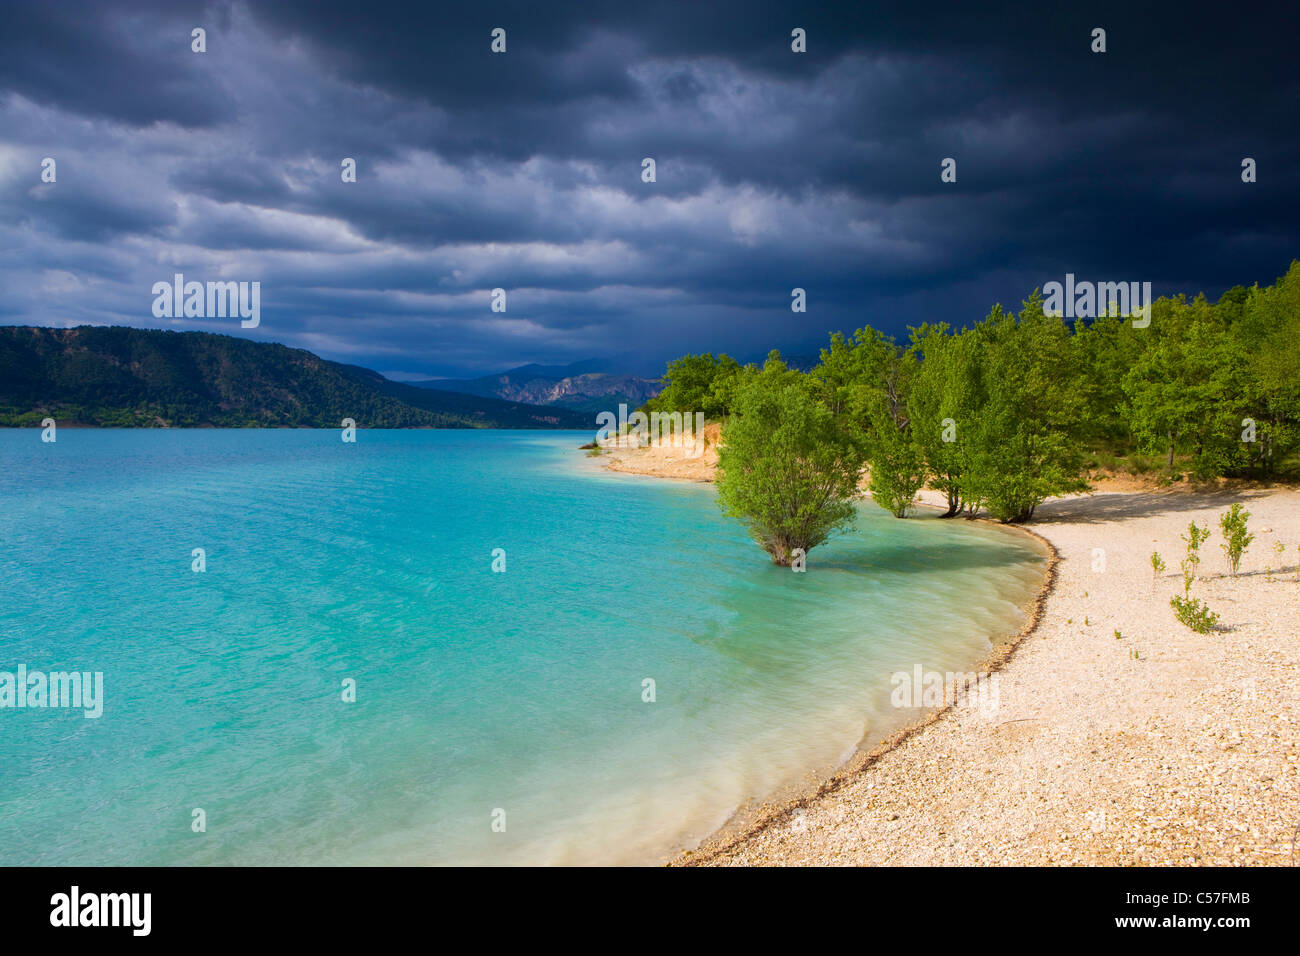 Lac de Sainte Croix, France, Europe, Provence, Alpes-de-Haute-Provence, lake, sea, reservoir, shore, trees, clouds, thunderstorm Stock Photo